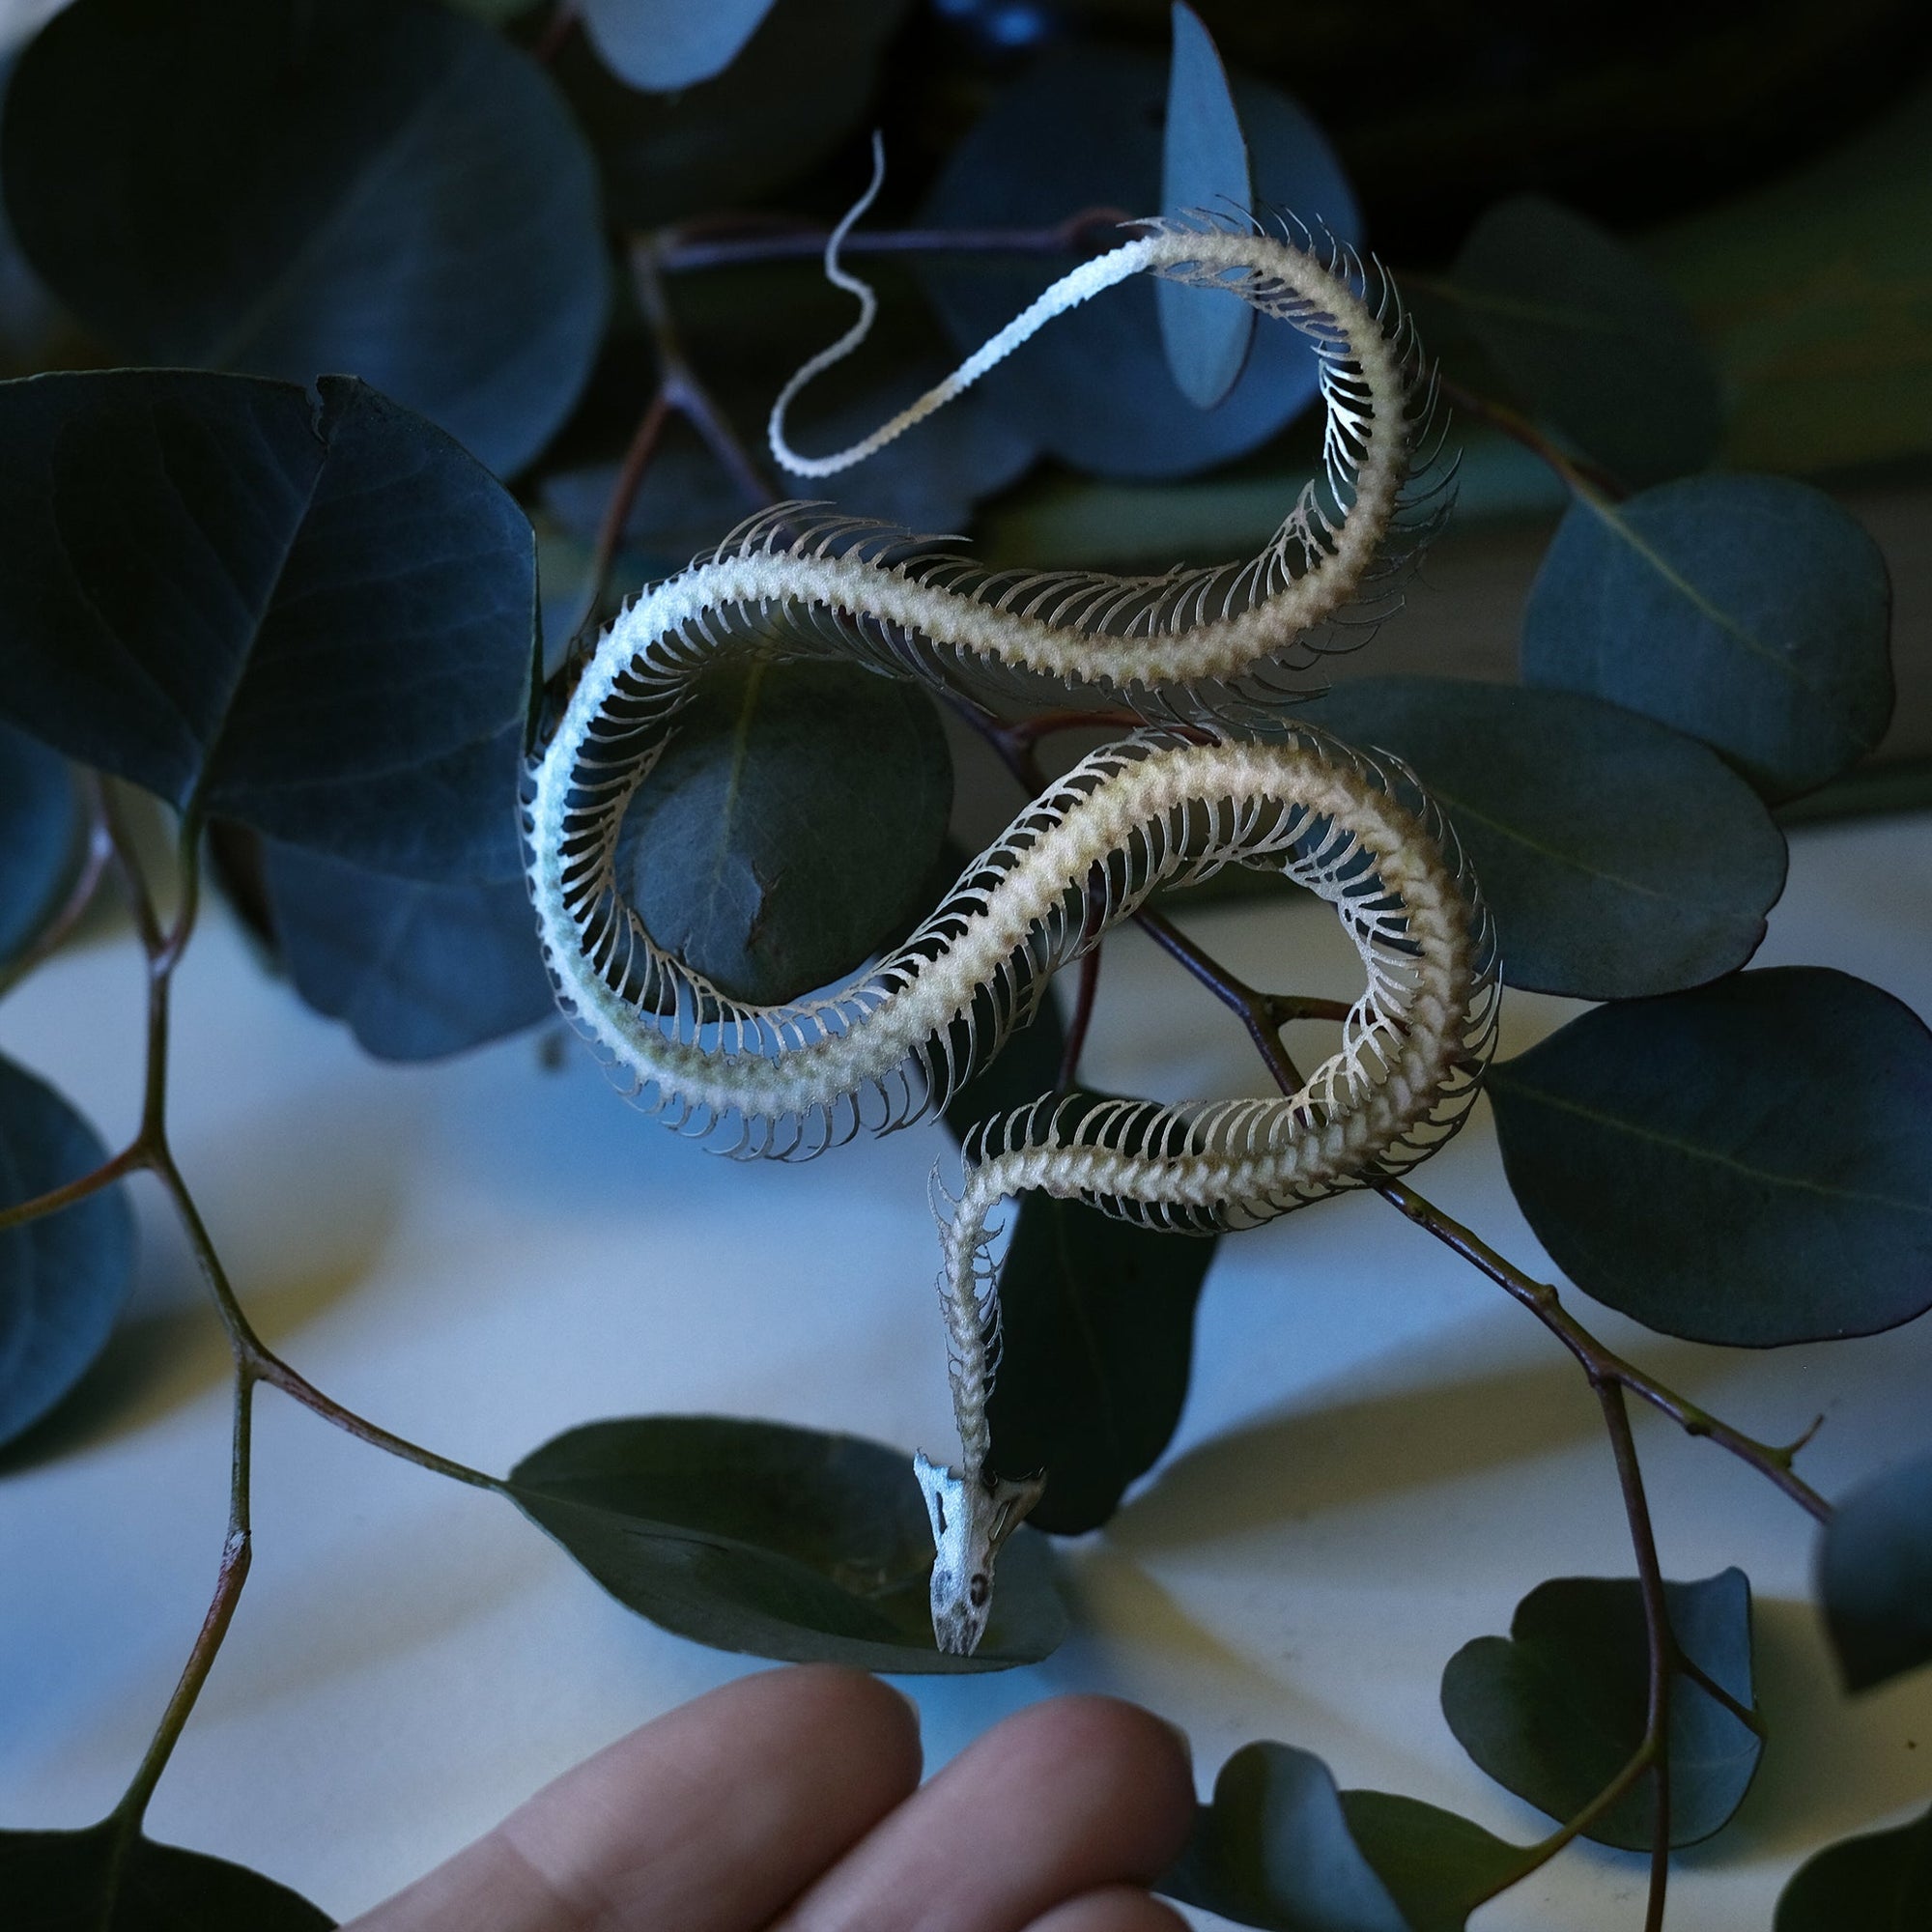 💫New💫 'Ouroboros' Mini Snake Skeleton Set - Artist Wholesale